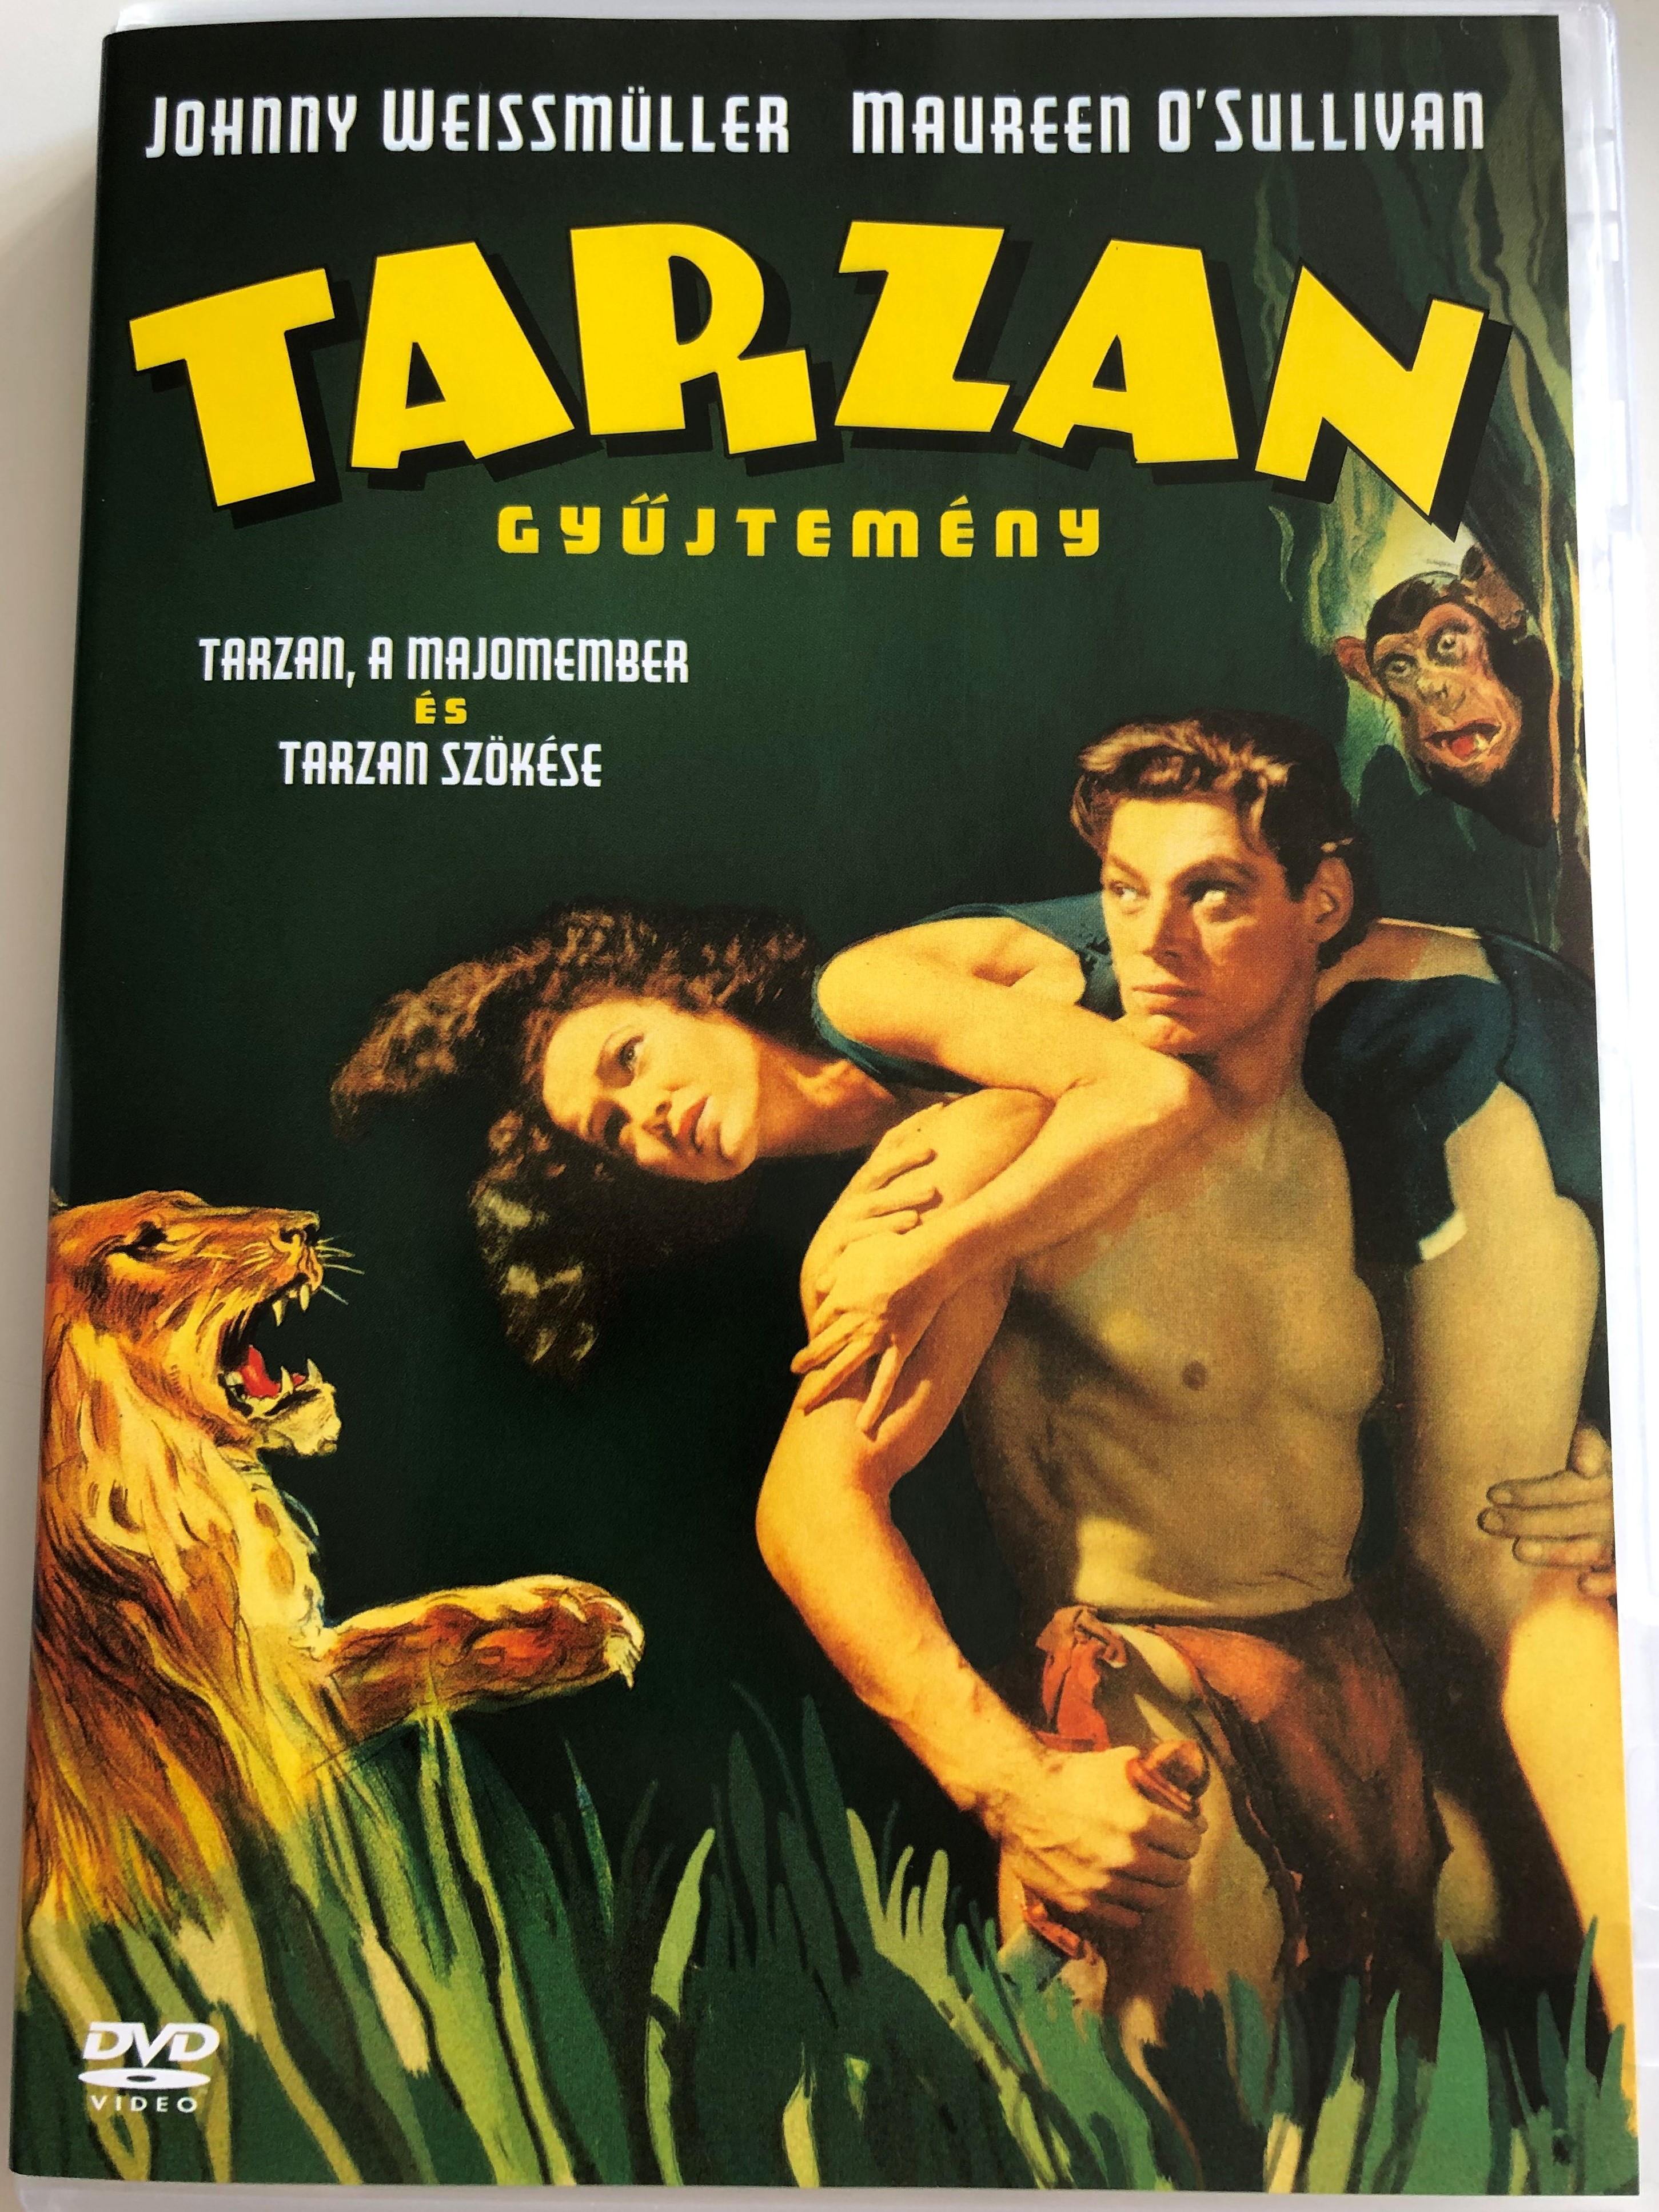 tarzan-collection-tarzan-the-ape-man-1932-tarzan-escapes-1936-dvd-tarzan-gy-jtem-ny-tarzan-a-majomember-tarzan-sz-k-se-.jpg